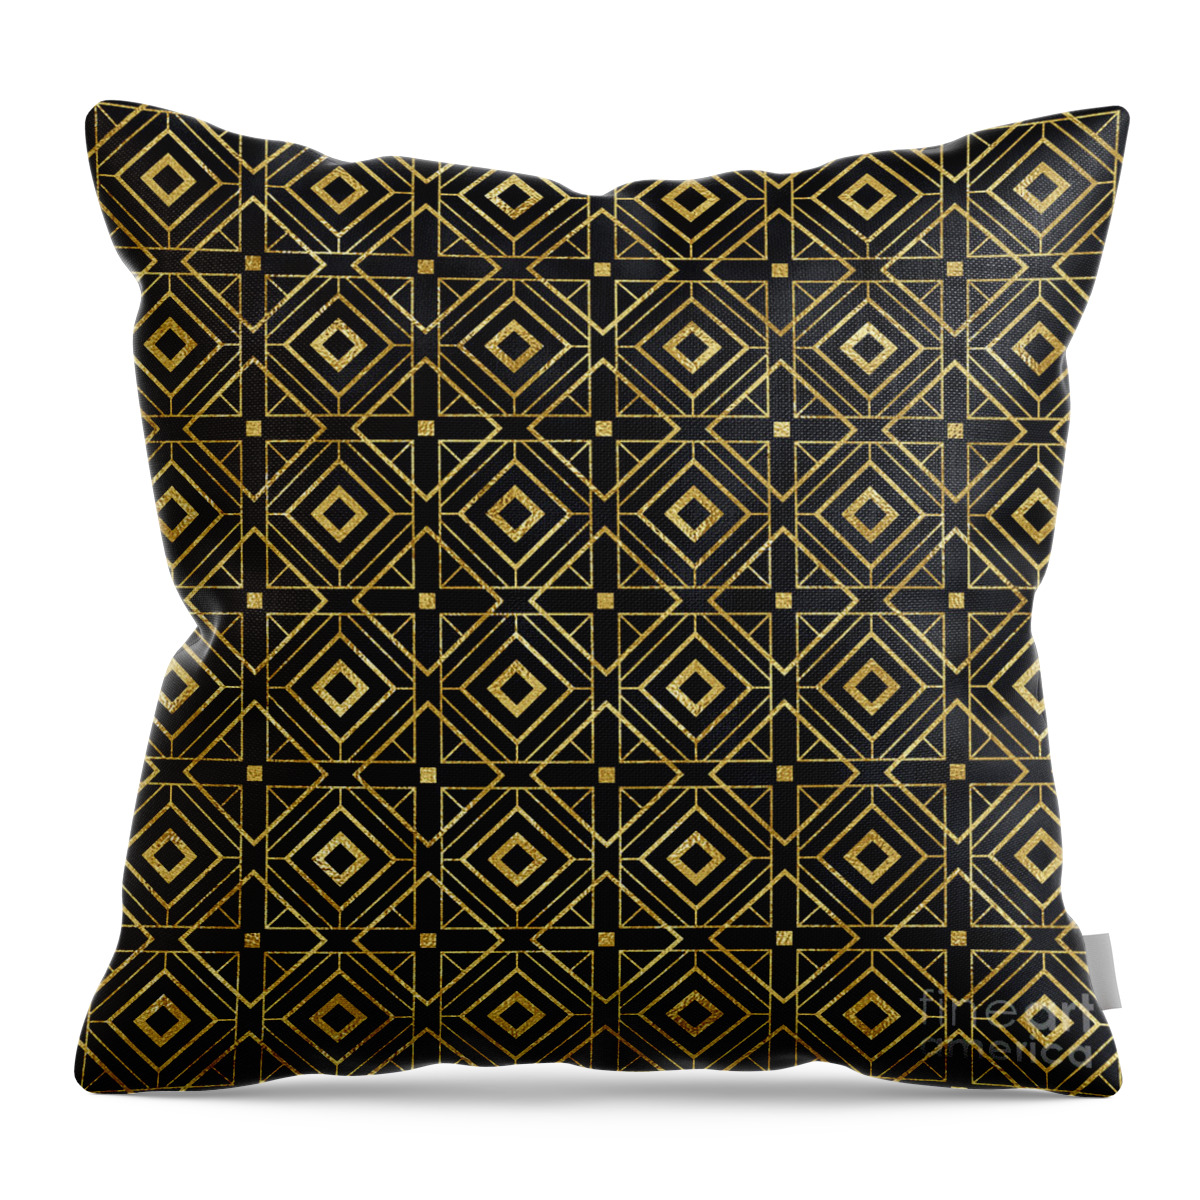 Art Throw Pillow featuring the digital art Triangula - Gold Black Art Deco Seamless Pattern by Sambel Pedes